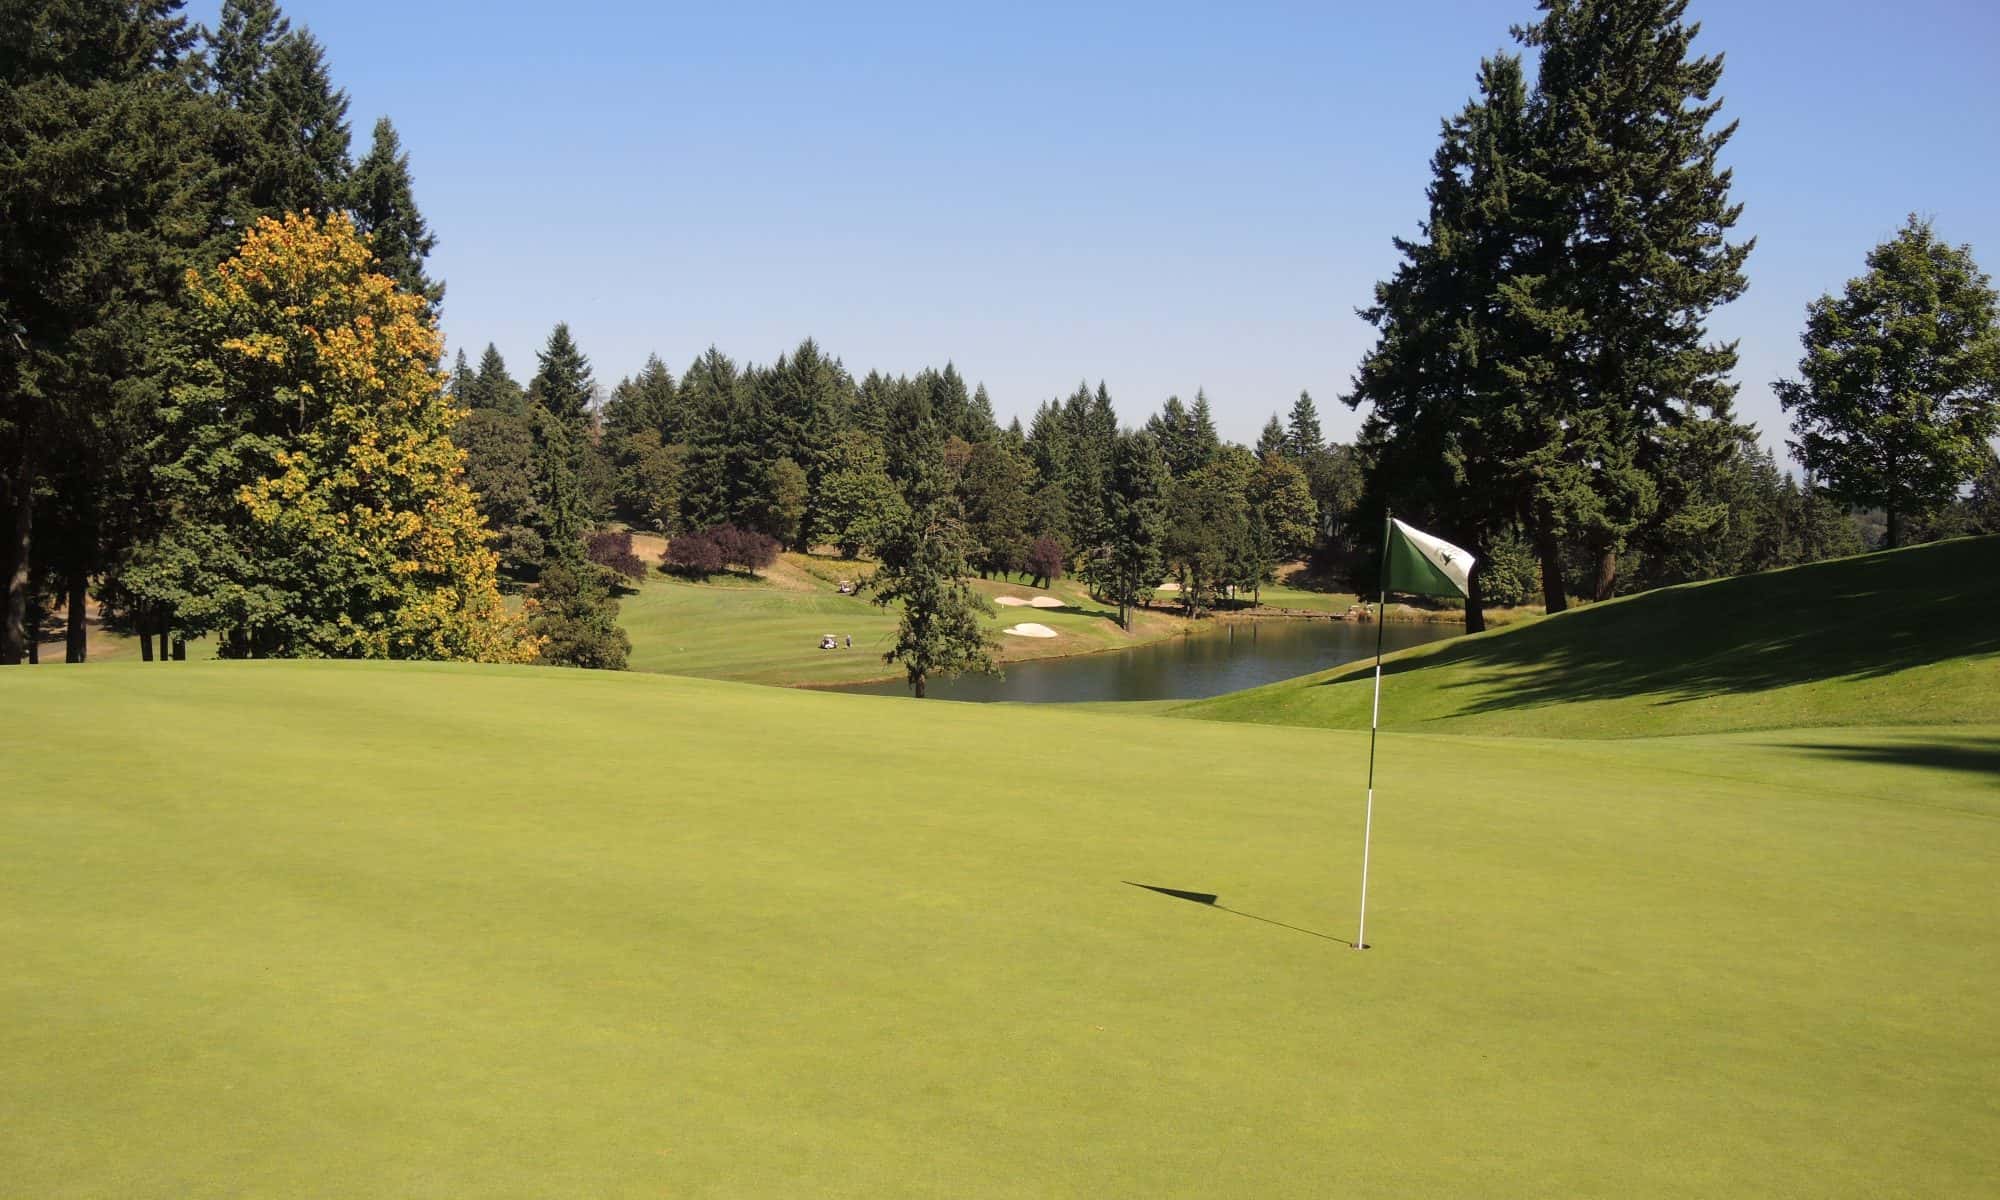 Oregon Golf Club